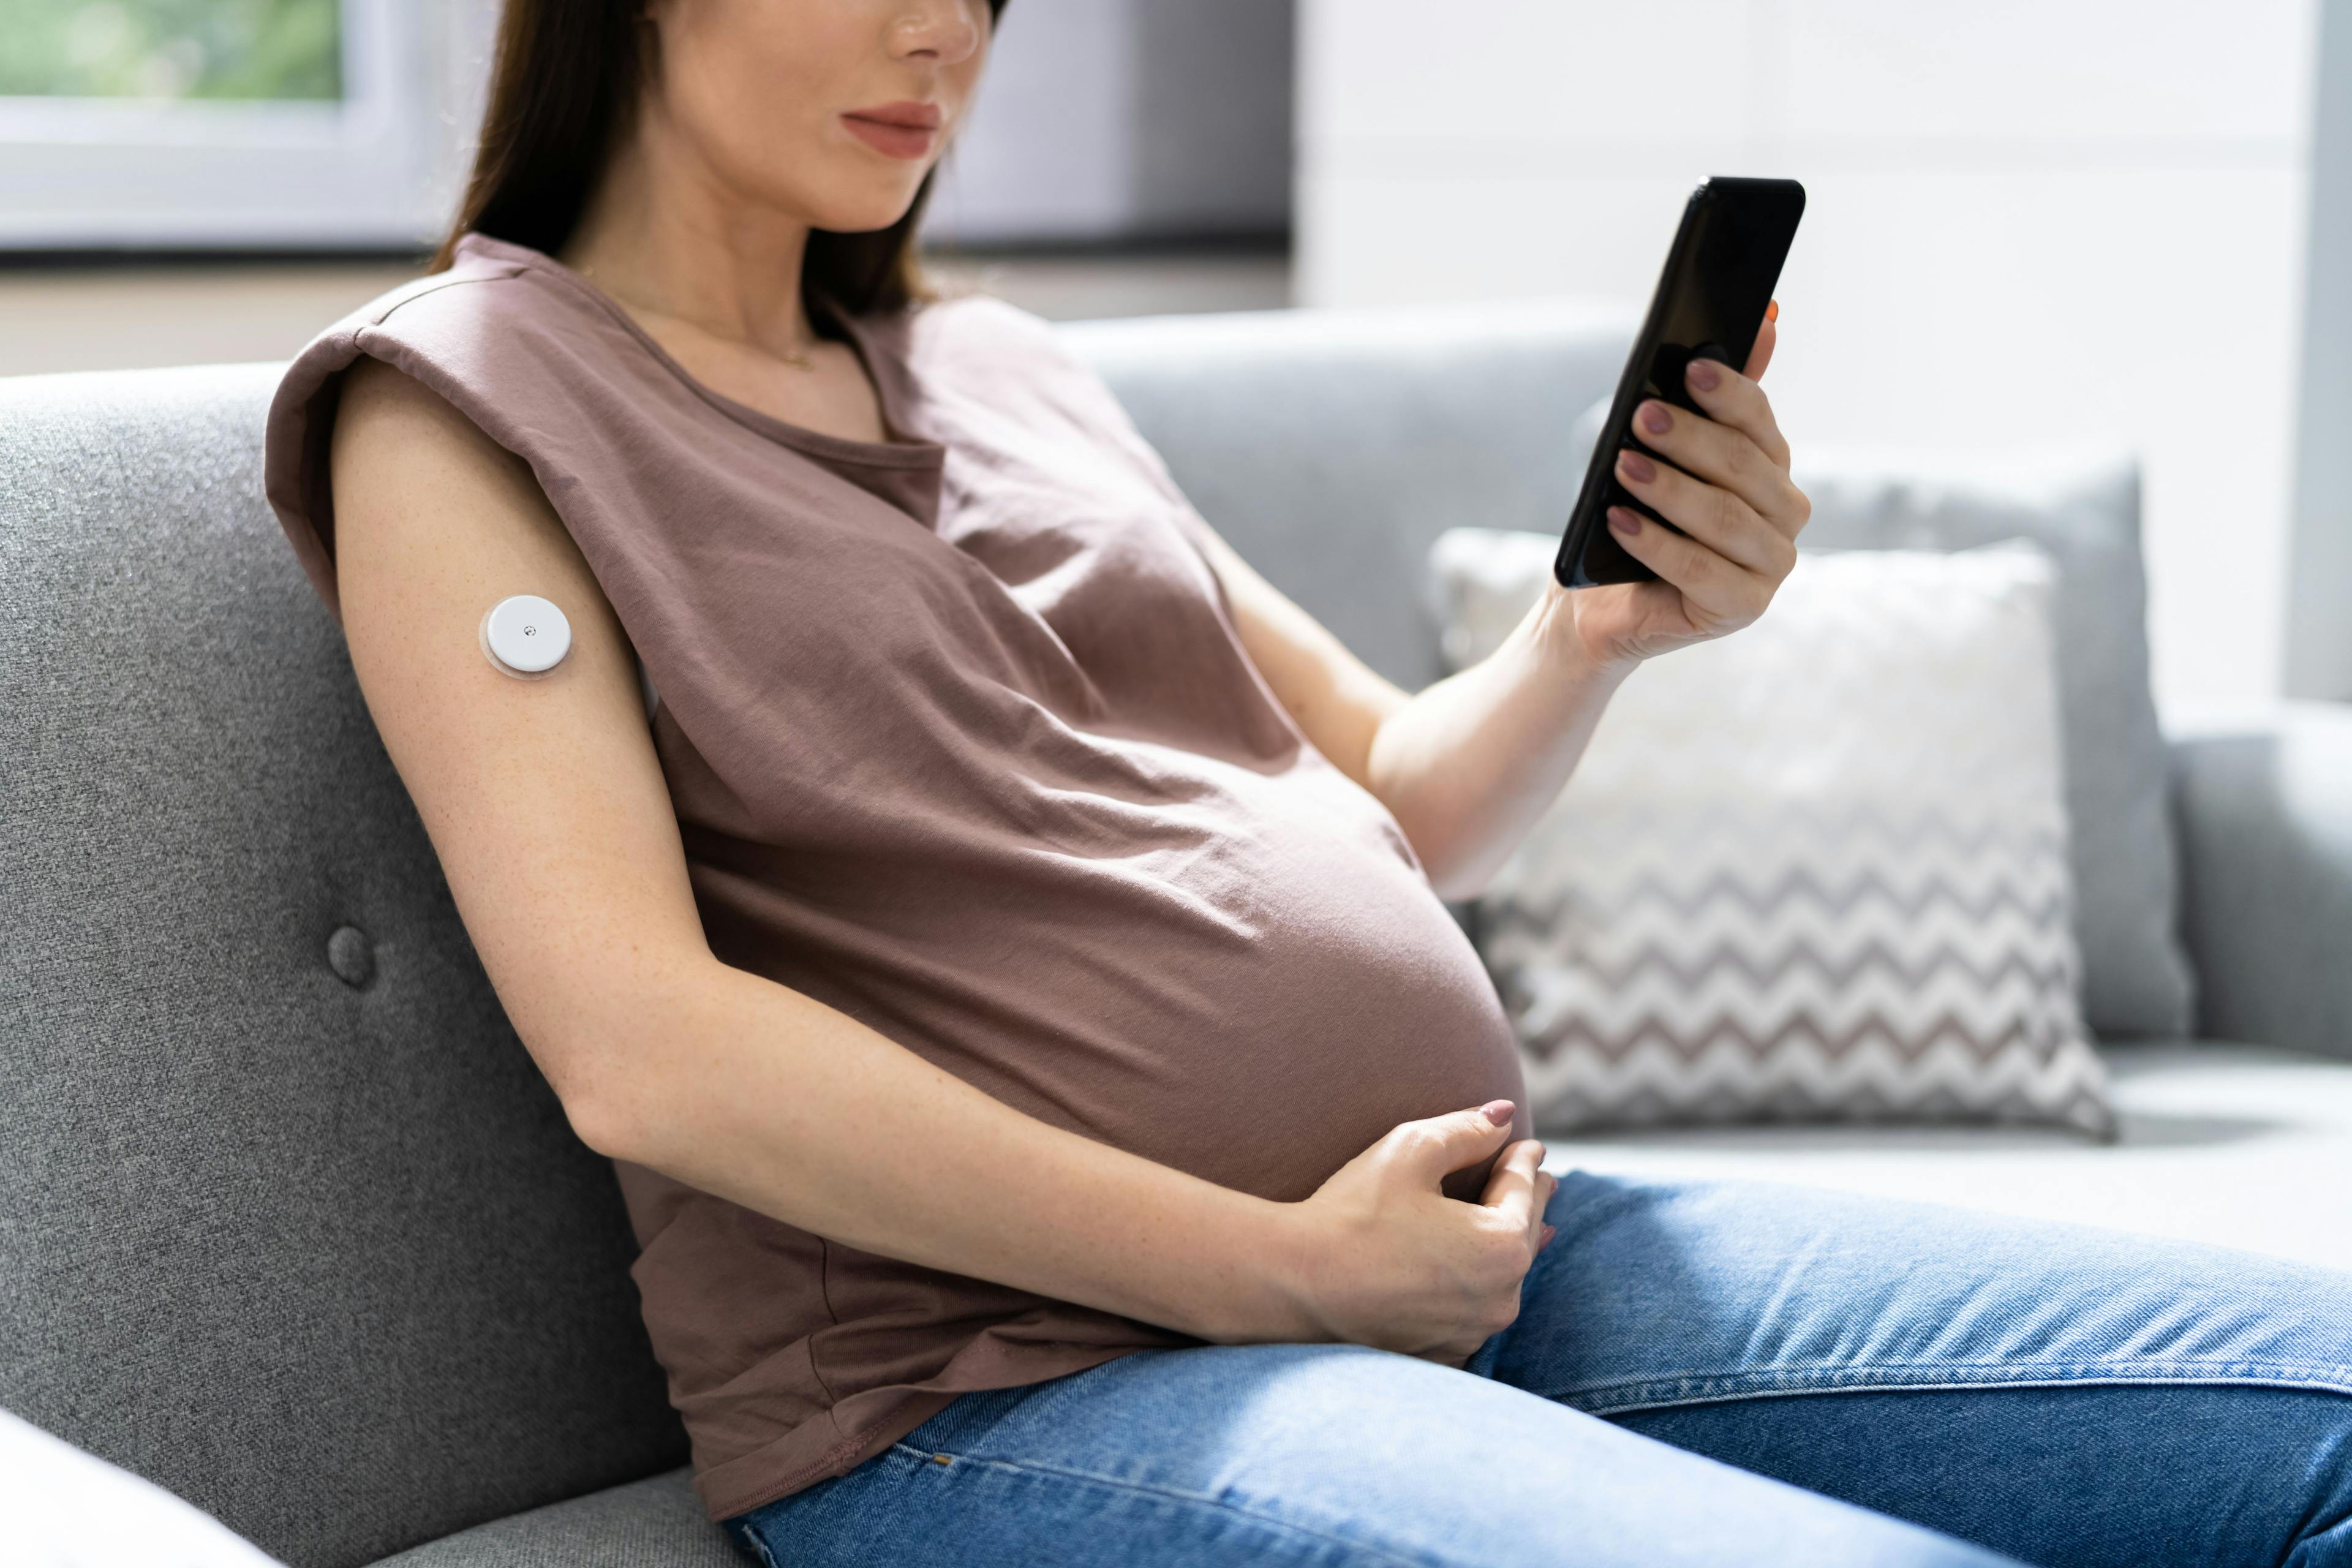 Pregnant woman using continuous glucose monitor / Andrey Popov - stock.adobe.com